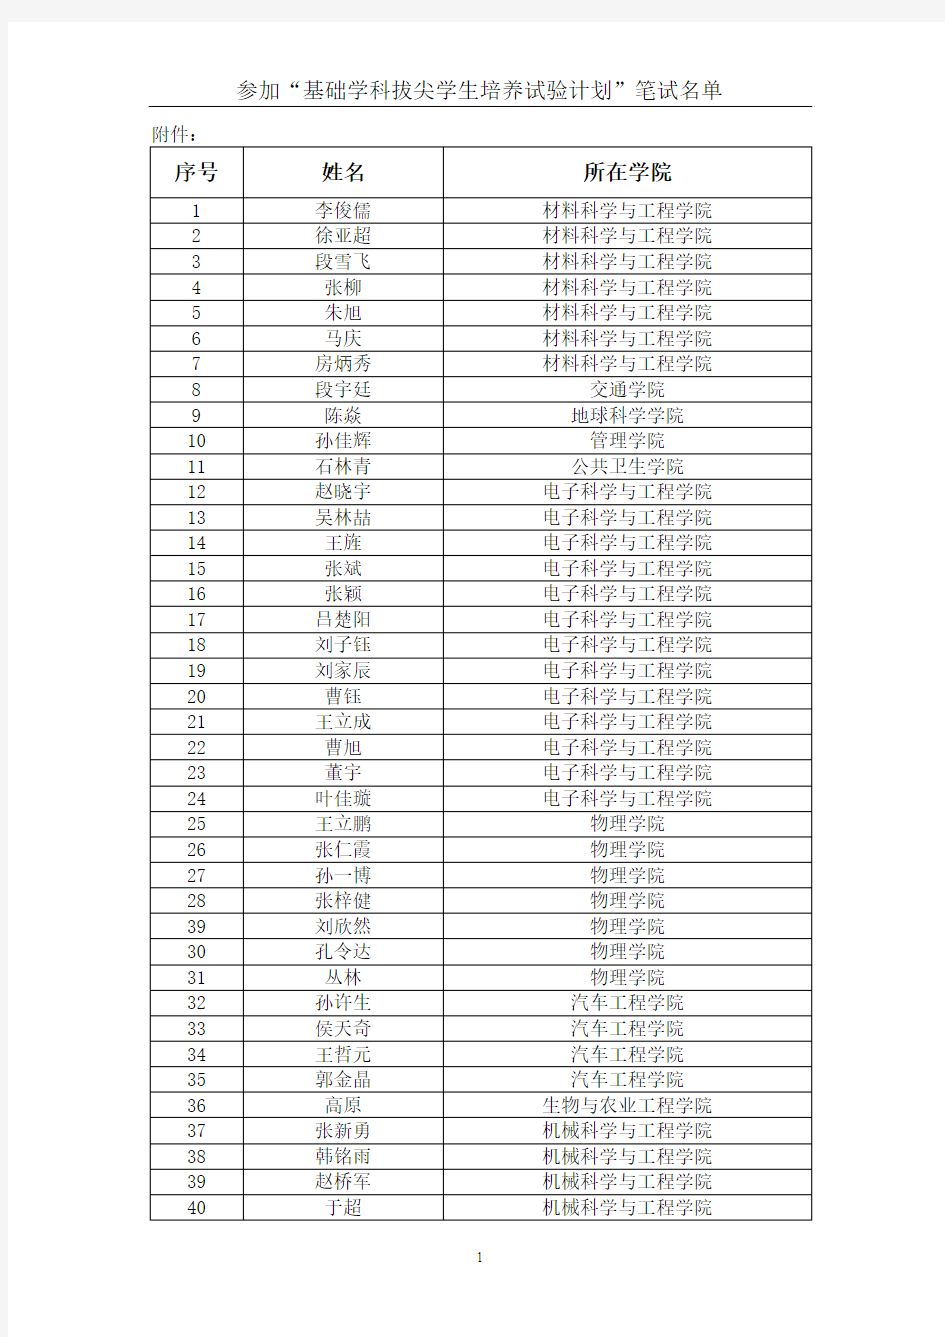 吉大2013英语二级班笔试名单